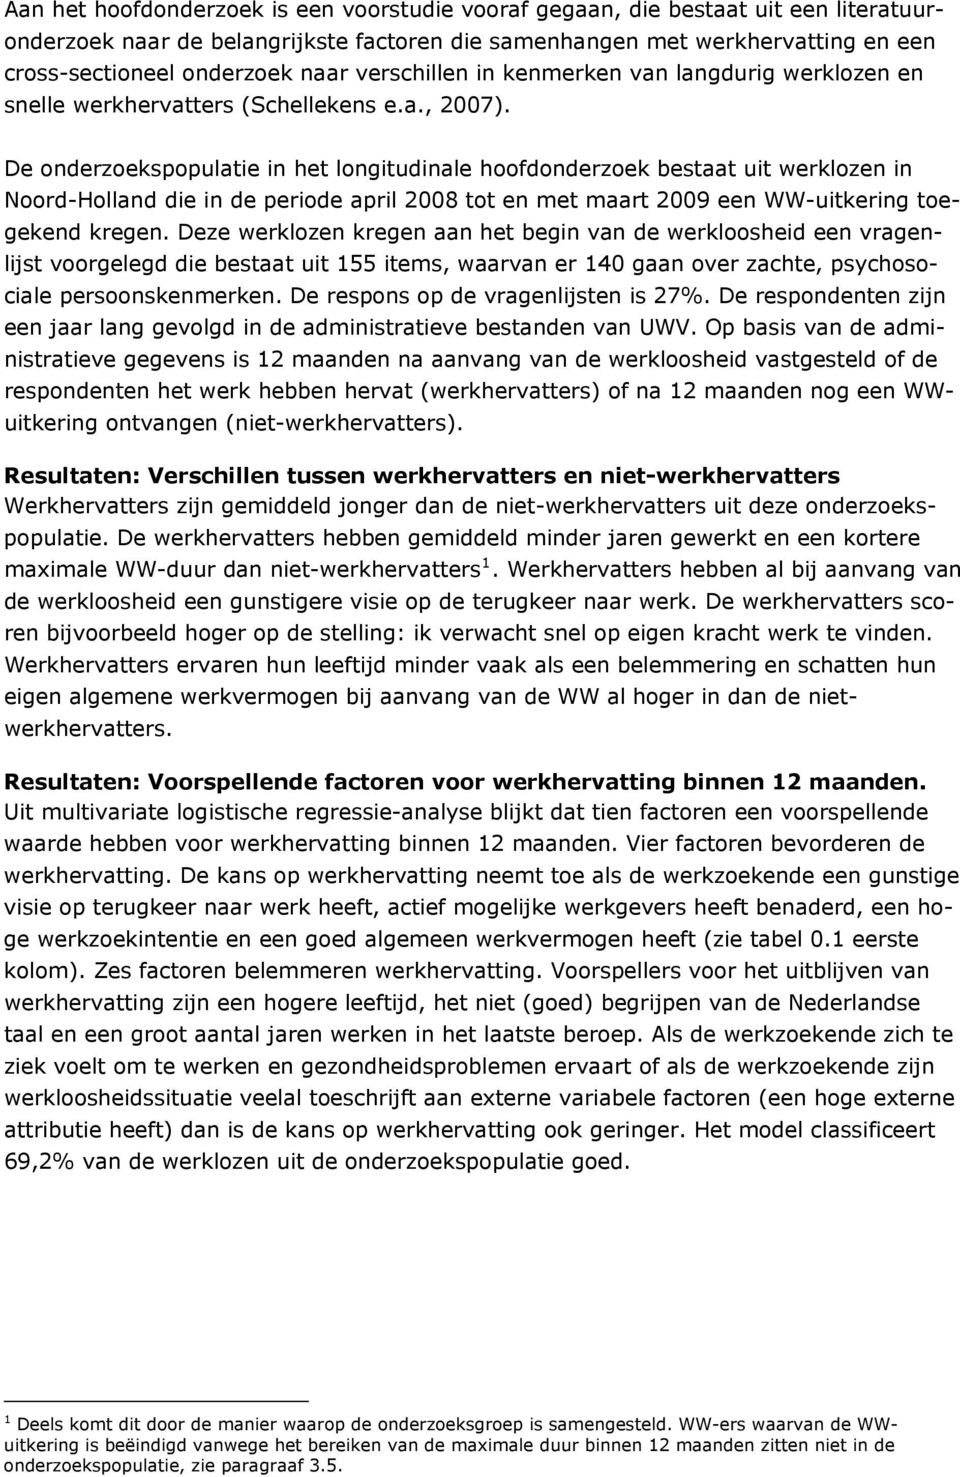 De onderzoekspopulatie in het longitudinale hoofdonderzoek bestaat uit werklozen in Noord-Holland die in de periode april 2008 tot en met maart 2009 een WW-uitkering toegekend kregen.